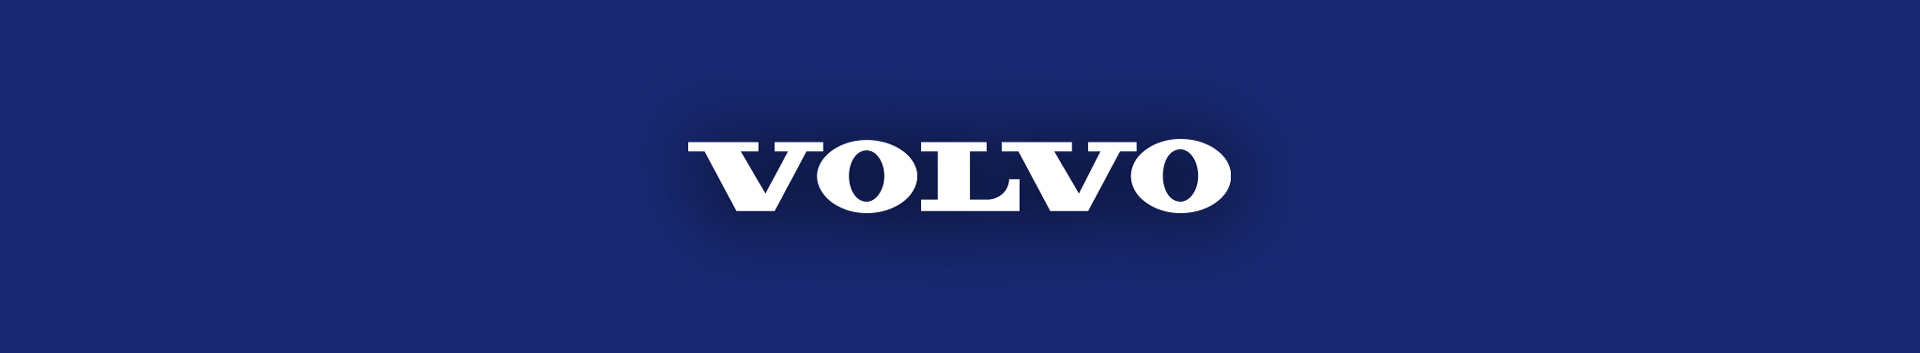 Volvo logo in white on a Volvo-dark-blue background